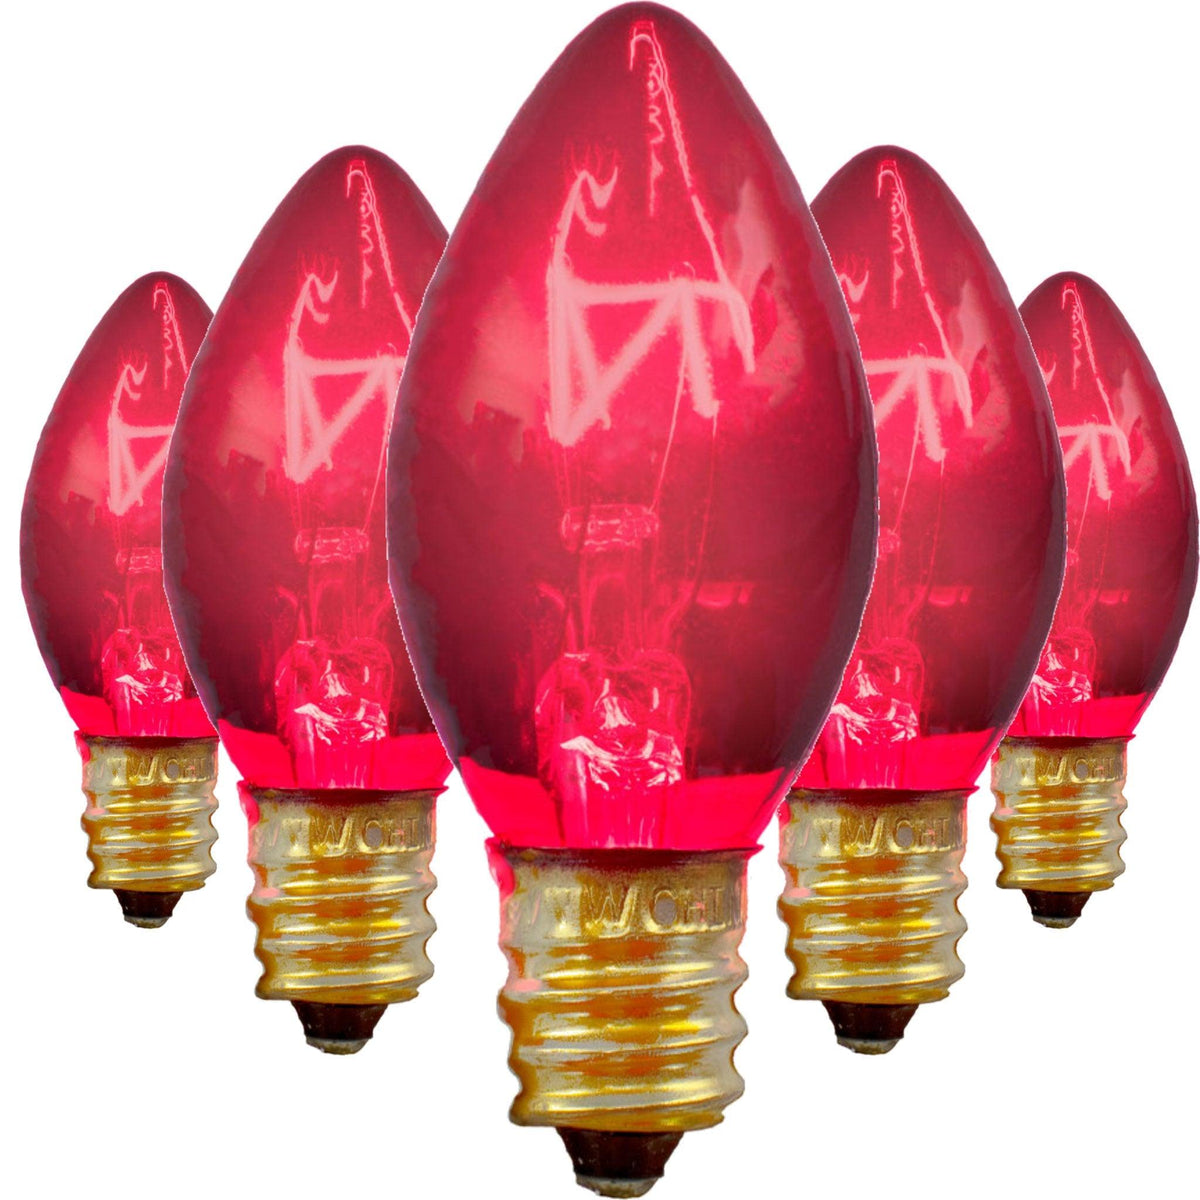 Buy brand new boxes of C-7 & C-9 Pink Christmas Light Bulbs at LeeDisplay.com